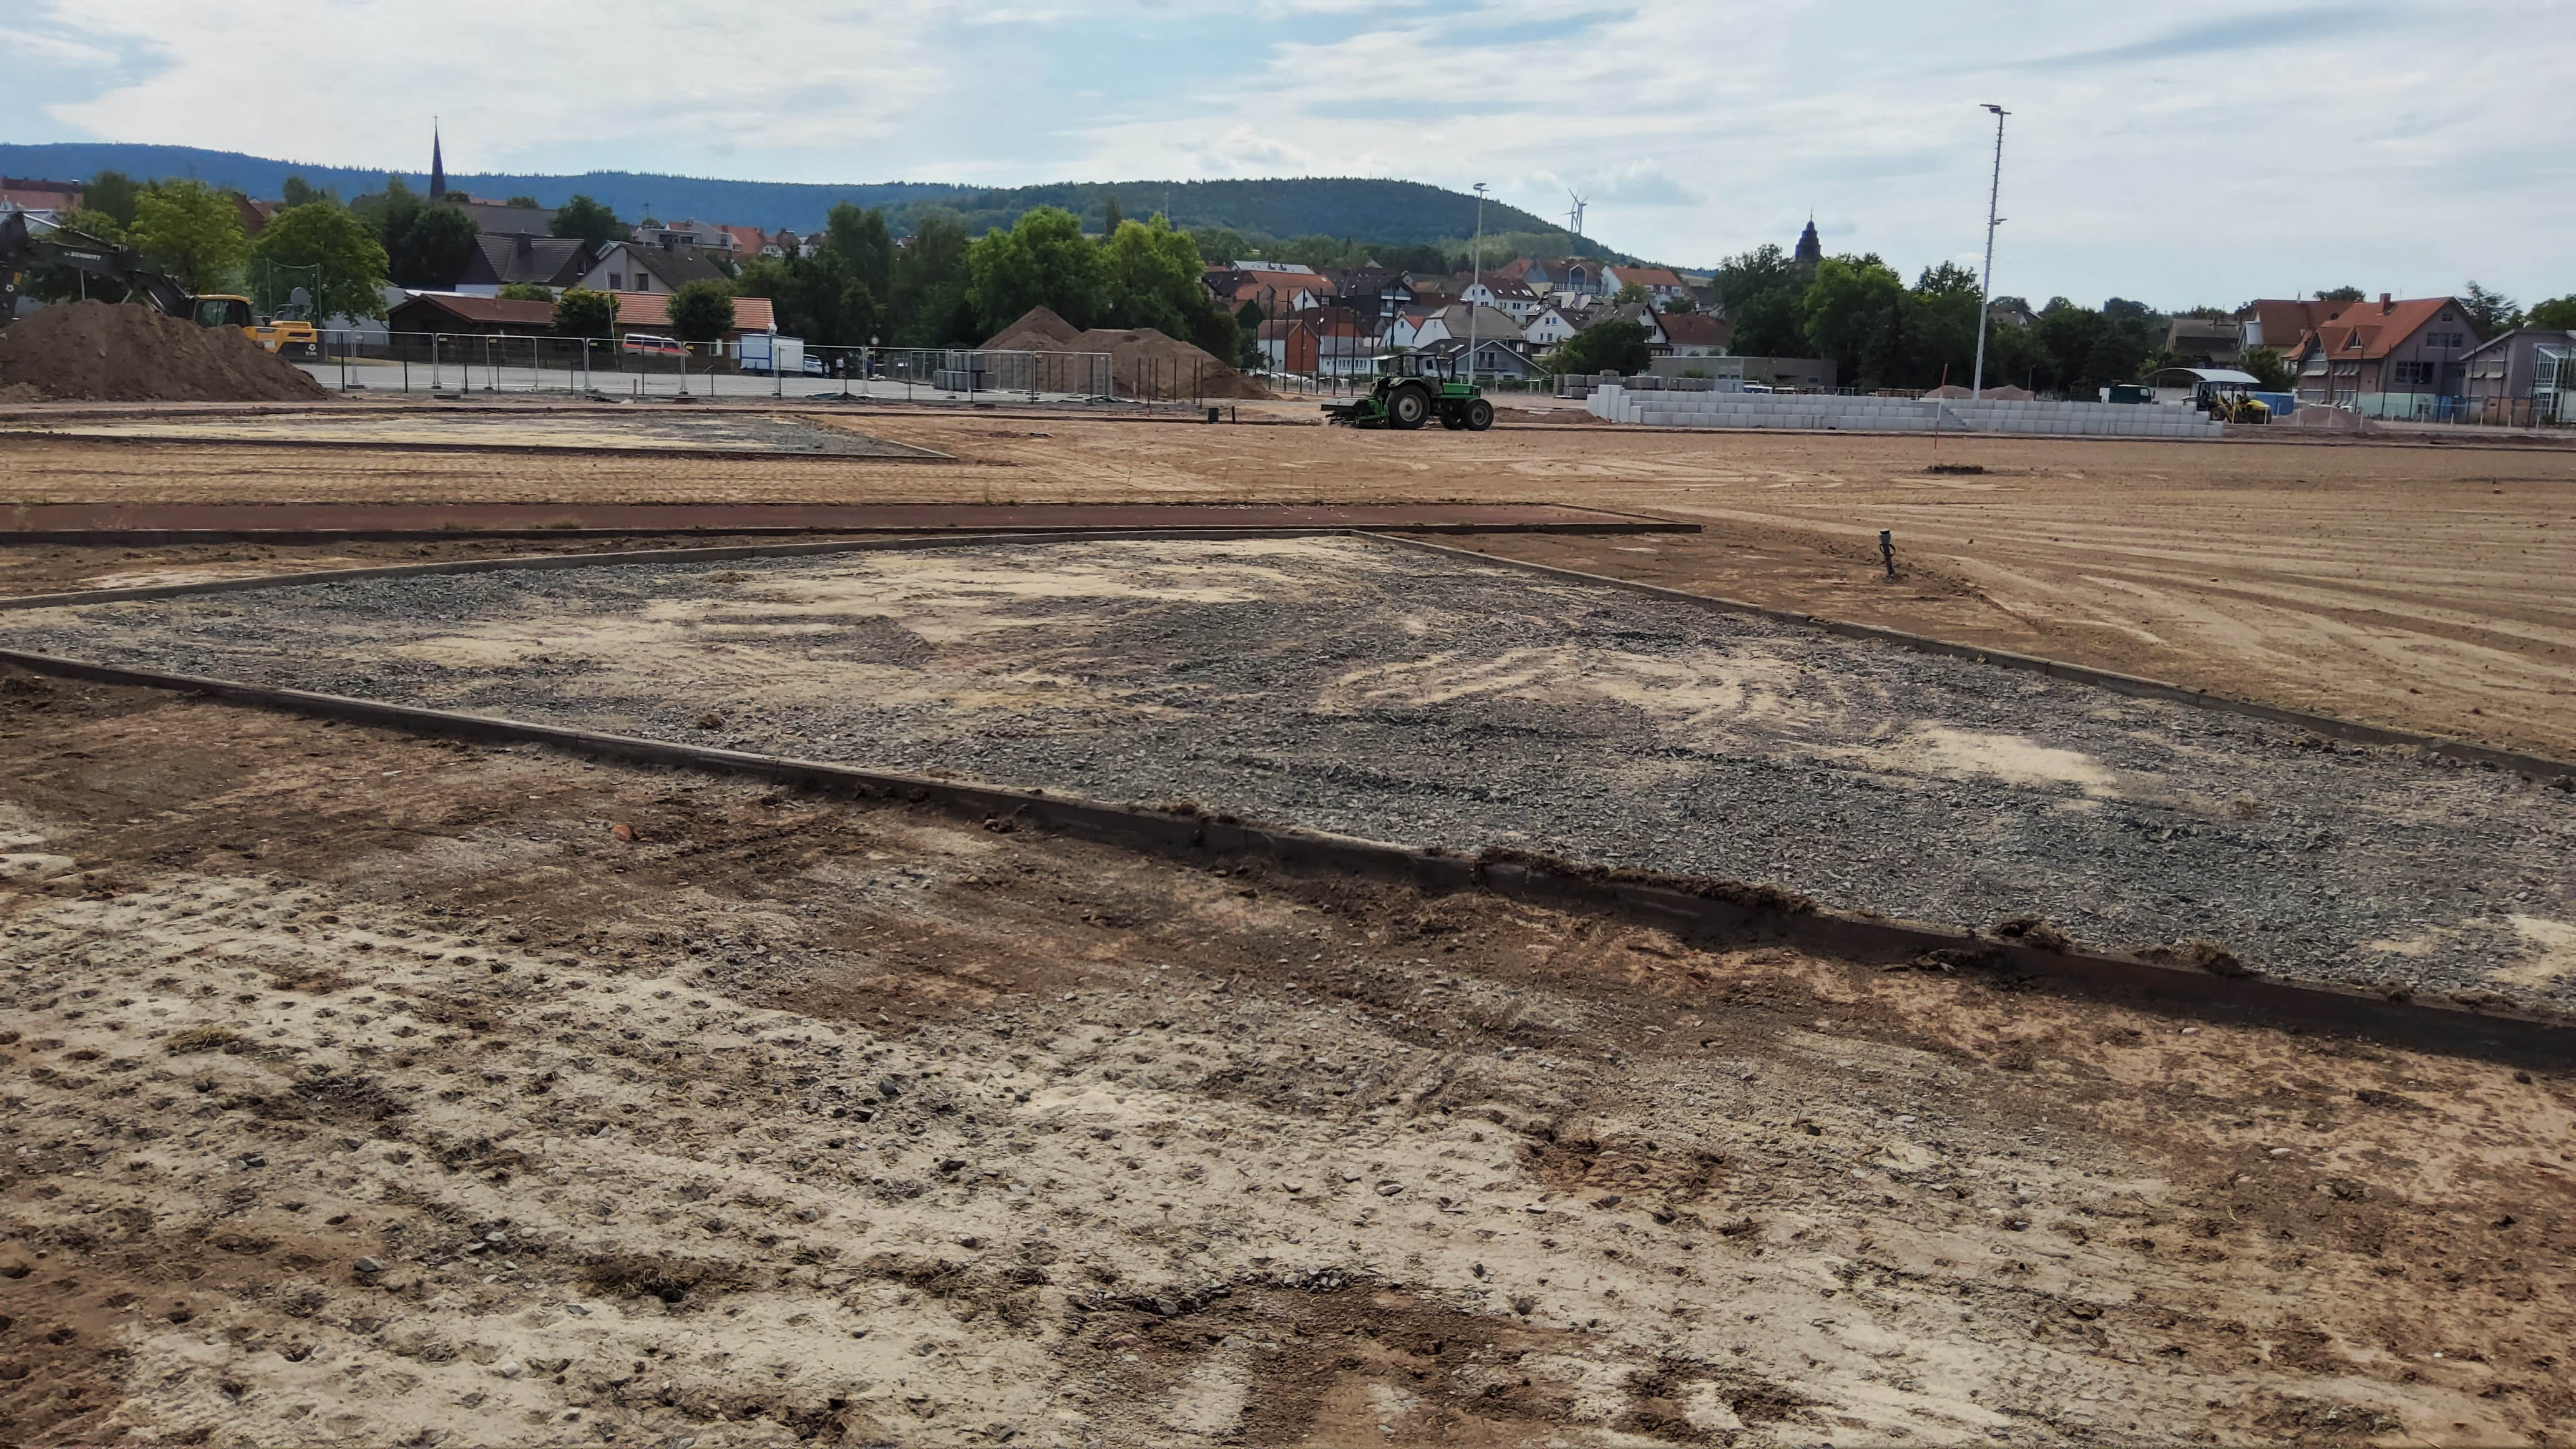 Das Bild zeigt eine Baustelle. Der Boden wurde abgegraben und ist mit Sand überzogen. Im Hintergrund sieht man eine Stadt.